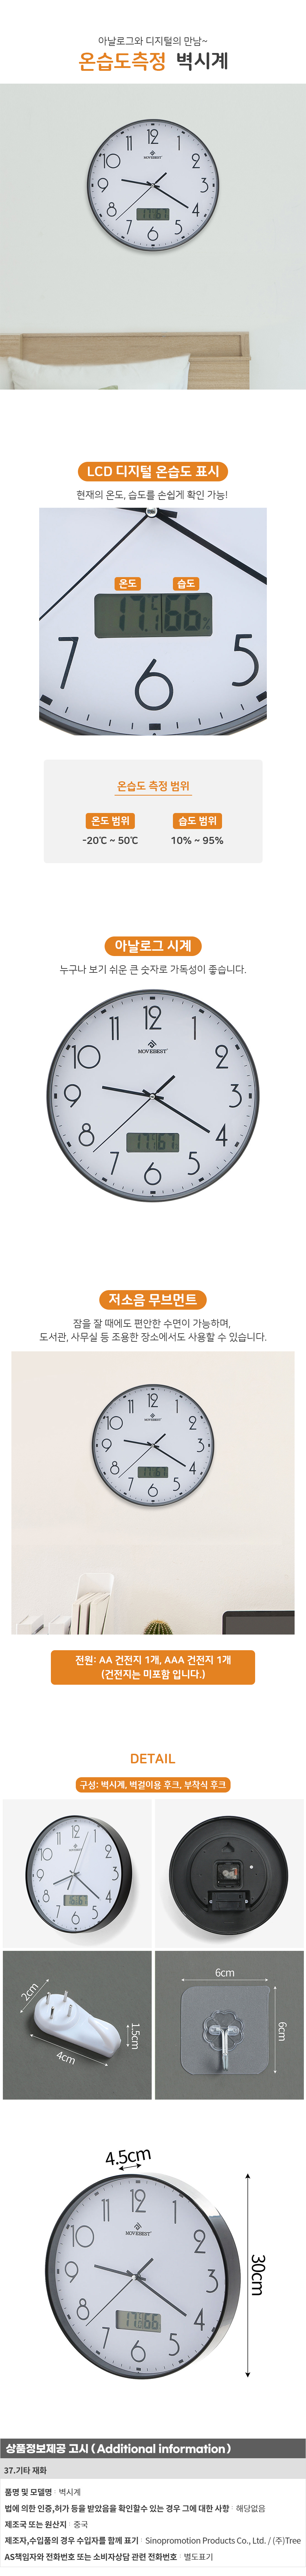 온습도계 벽시계 30cm 병원 로고 인쇄 벽걸이시계